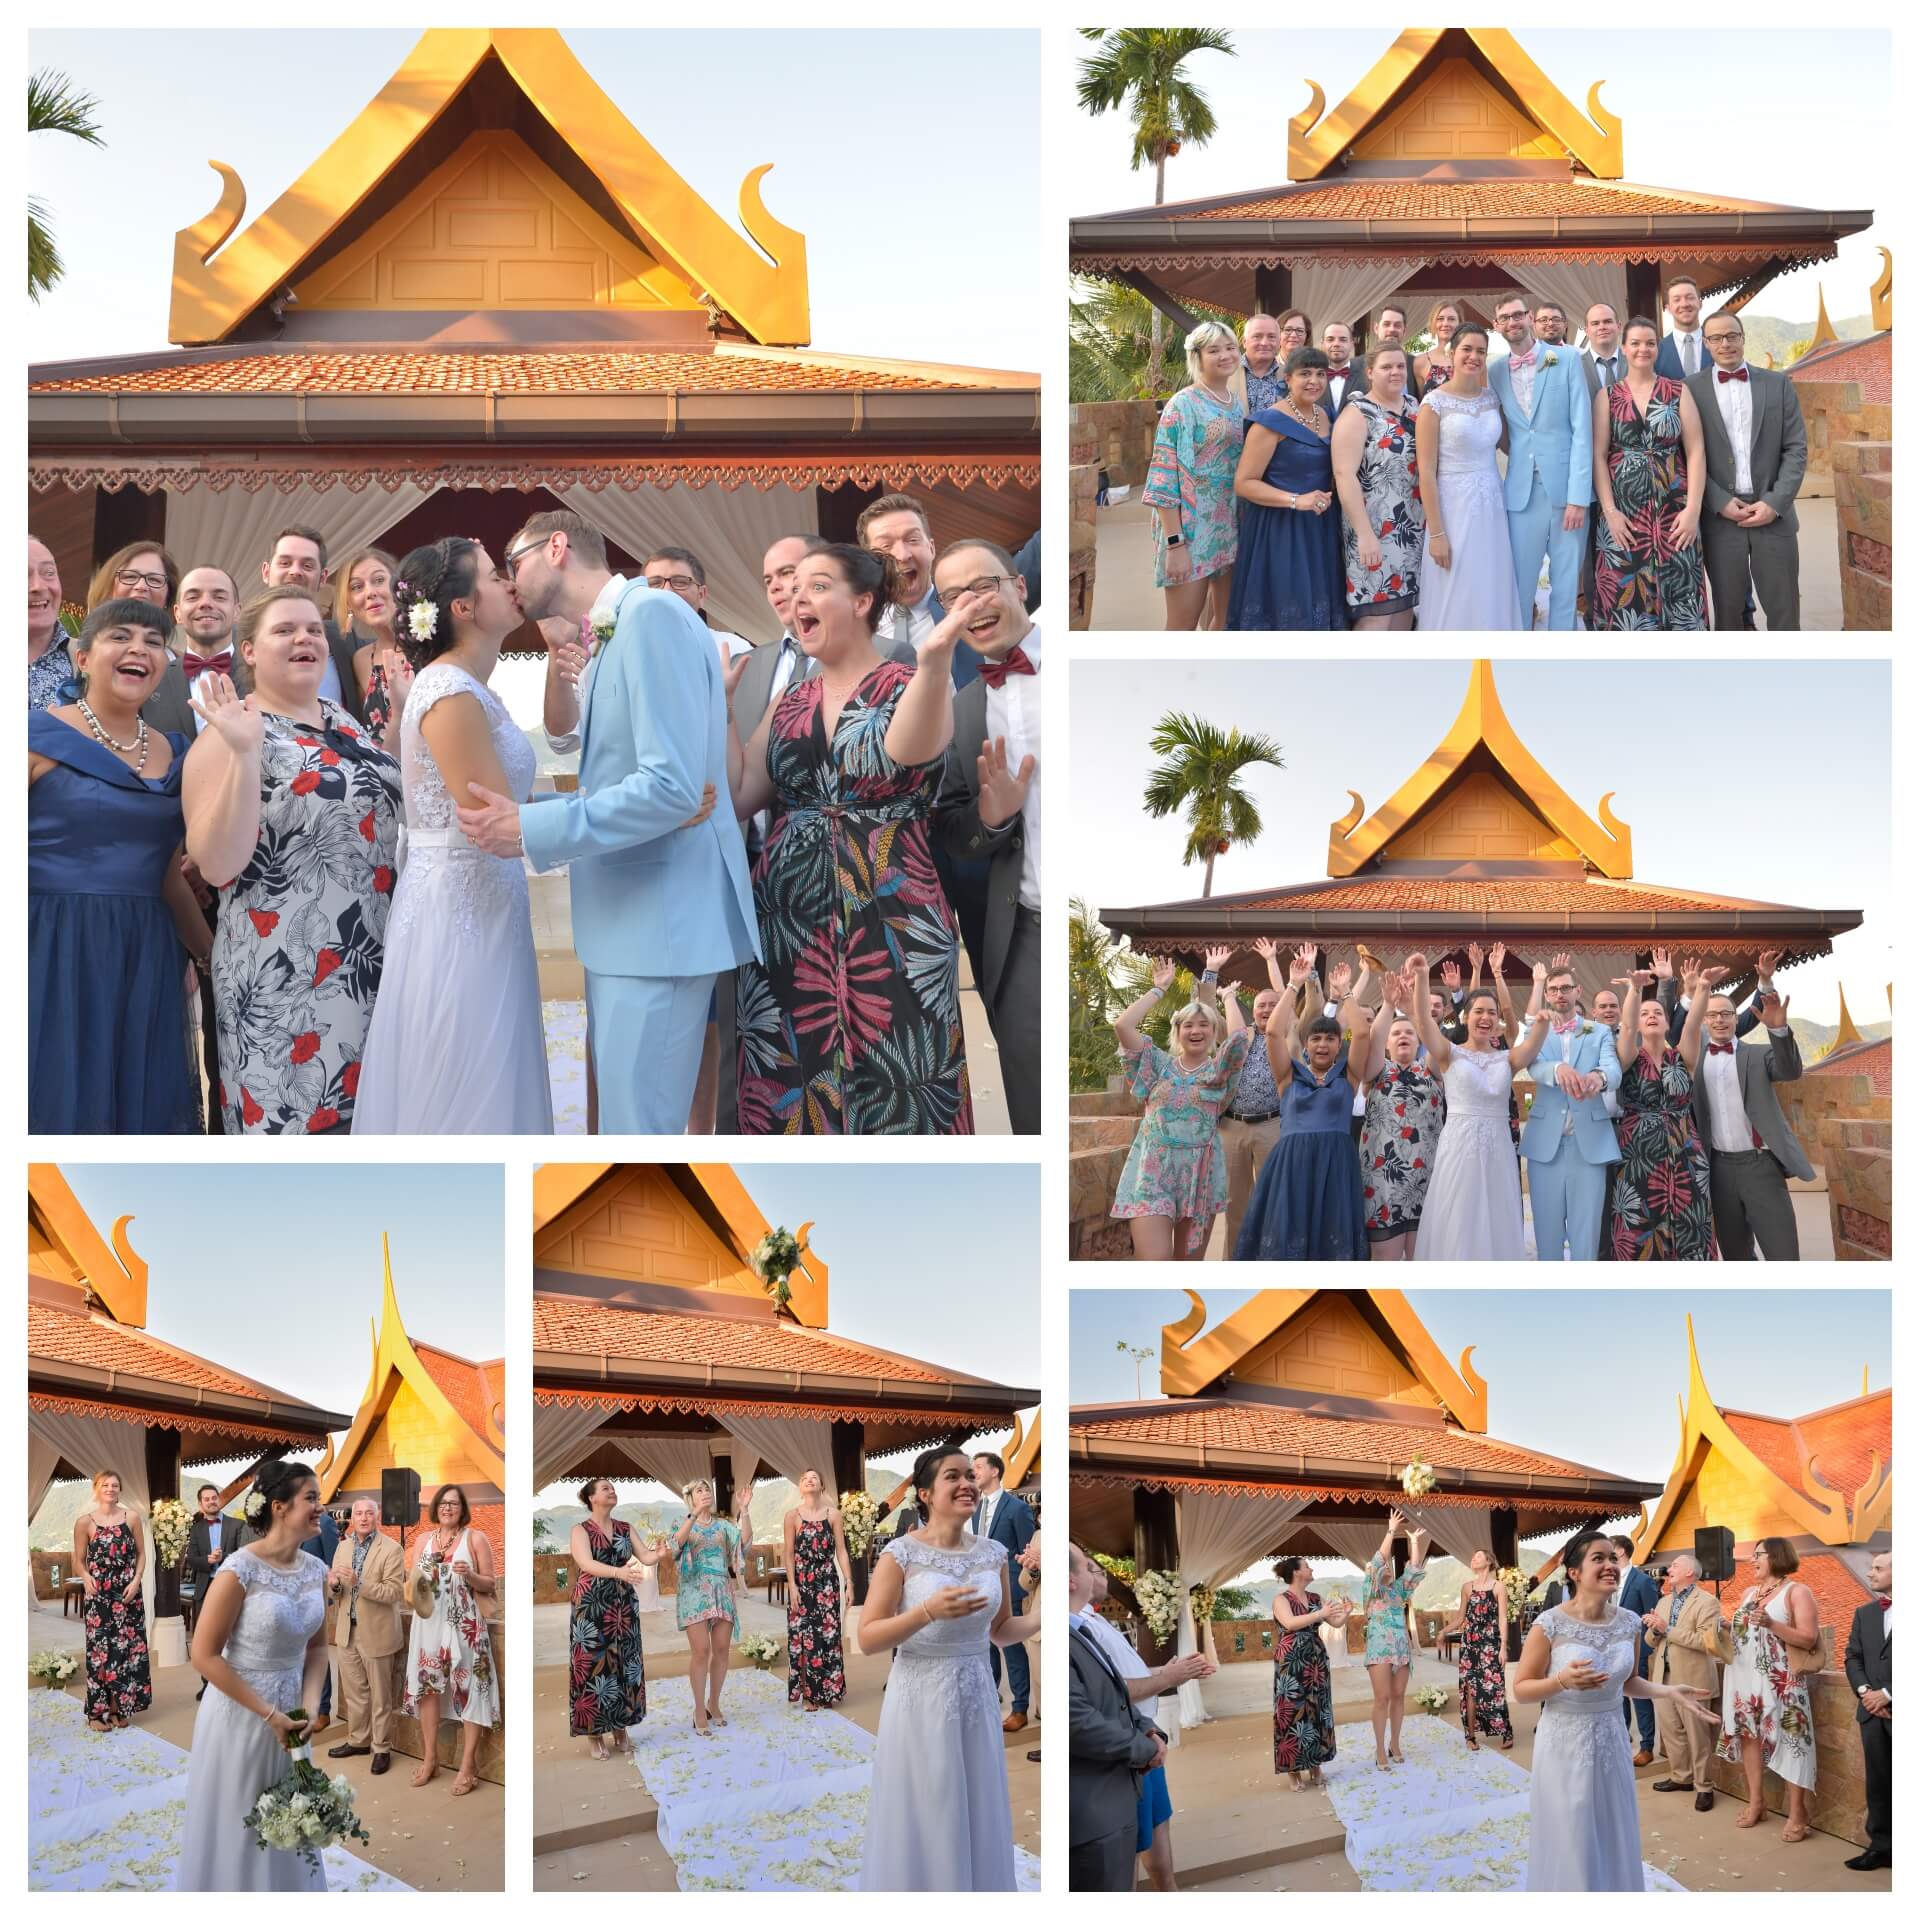 Phuket, Thailand wedding photographer